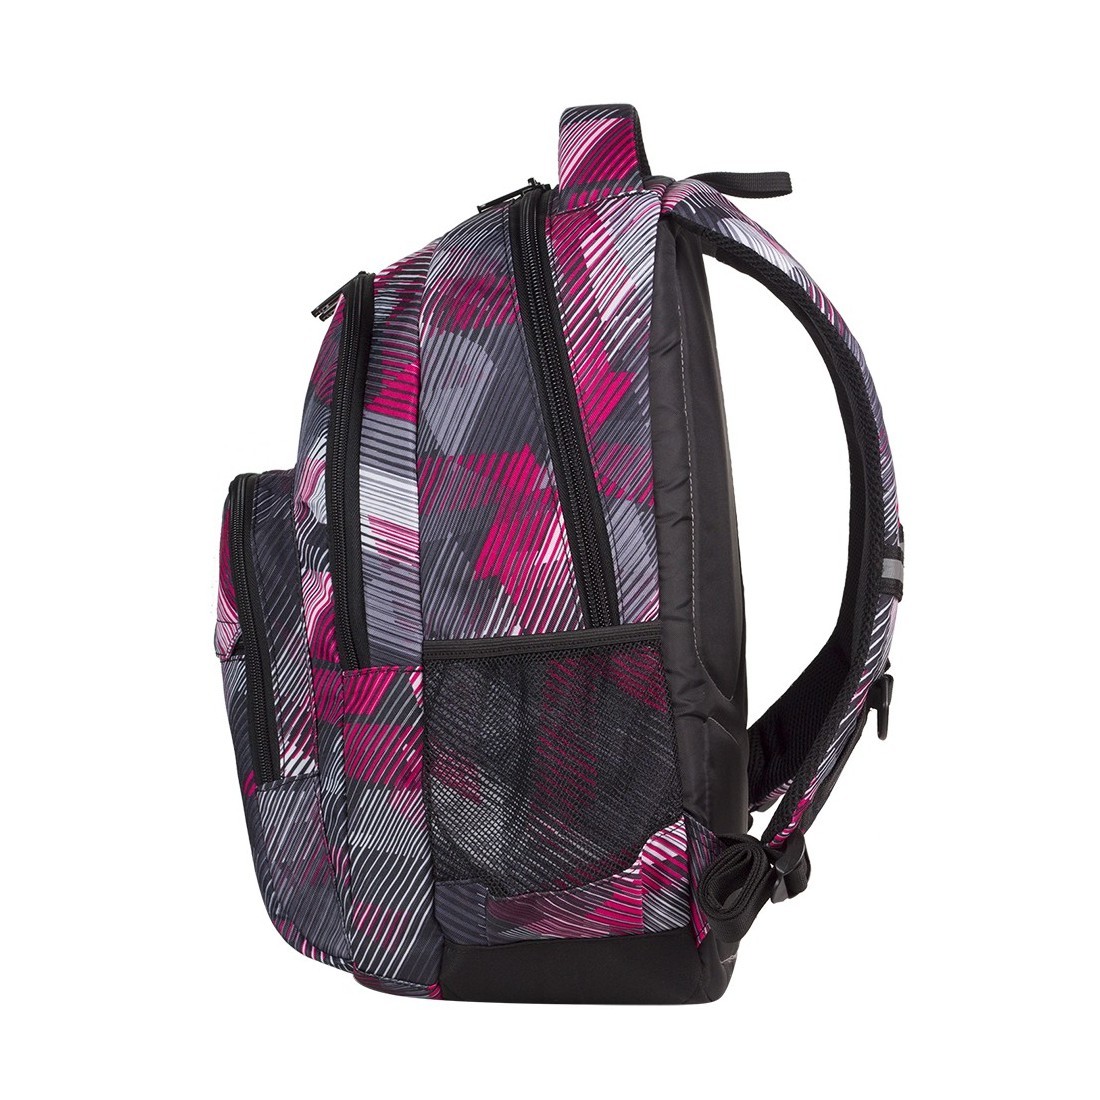 Plecak młodzieżowy CoolPack CP lekki szaro - różowy w paski - BASIC PINK MOTION 378 - plecak-tornister.pl